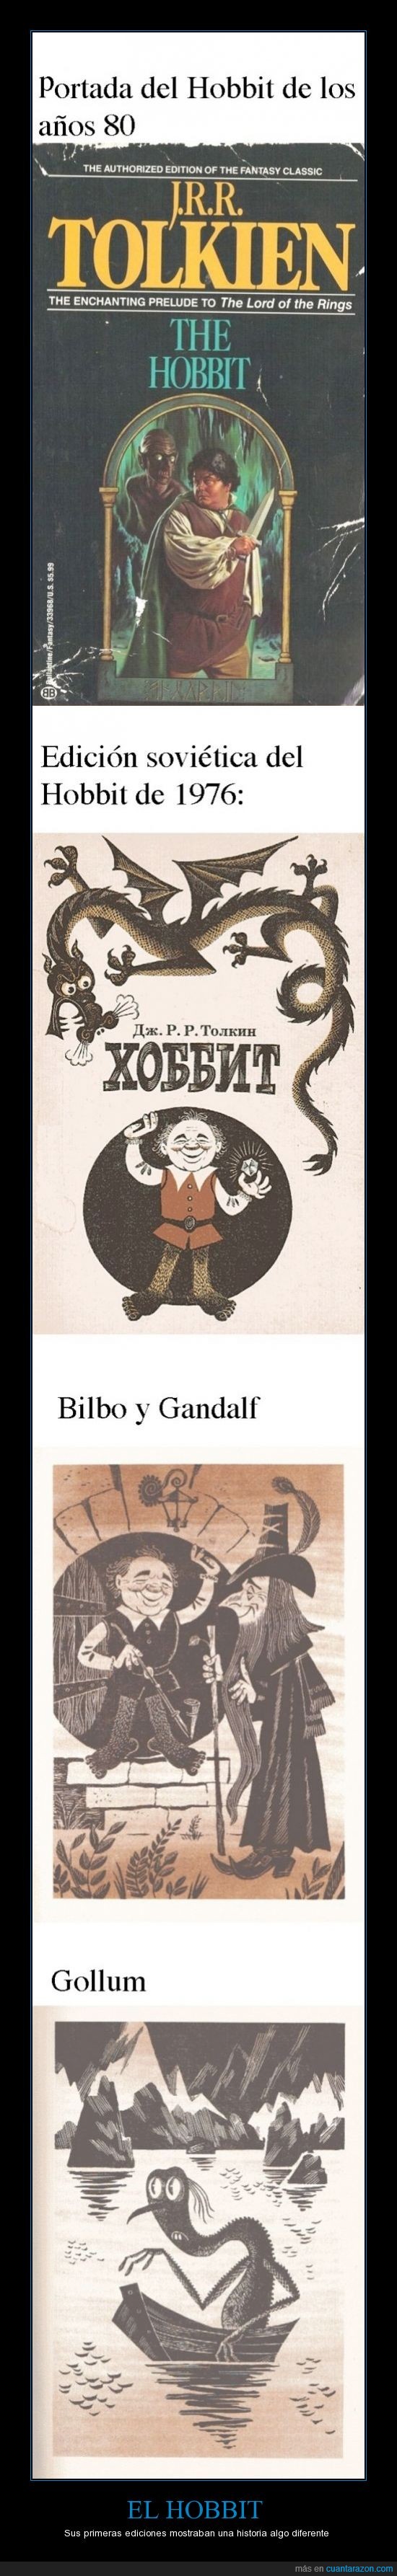 El hombre que se comió a Bilbo,Bilbo,Hobbit,Gandalf,ilustraciones,Gollum,portada